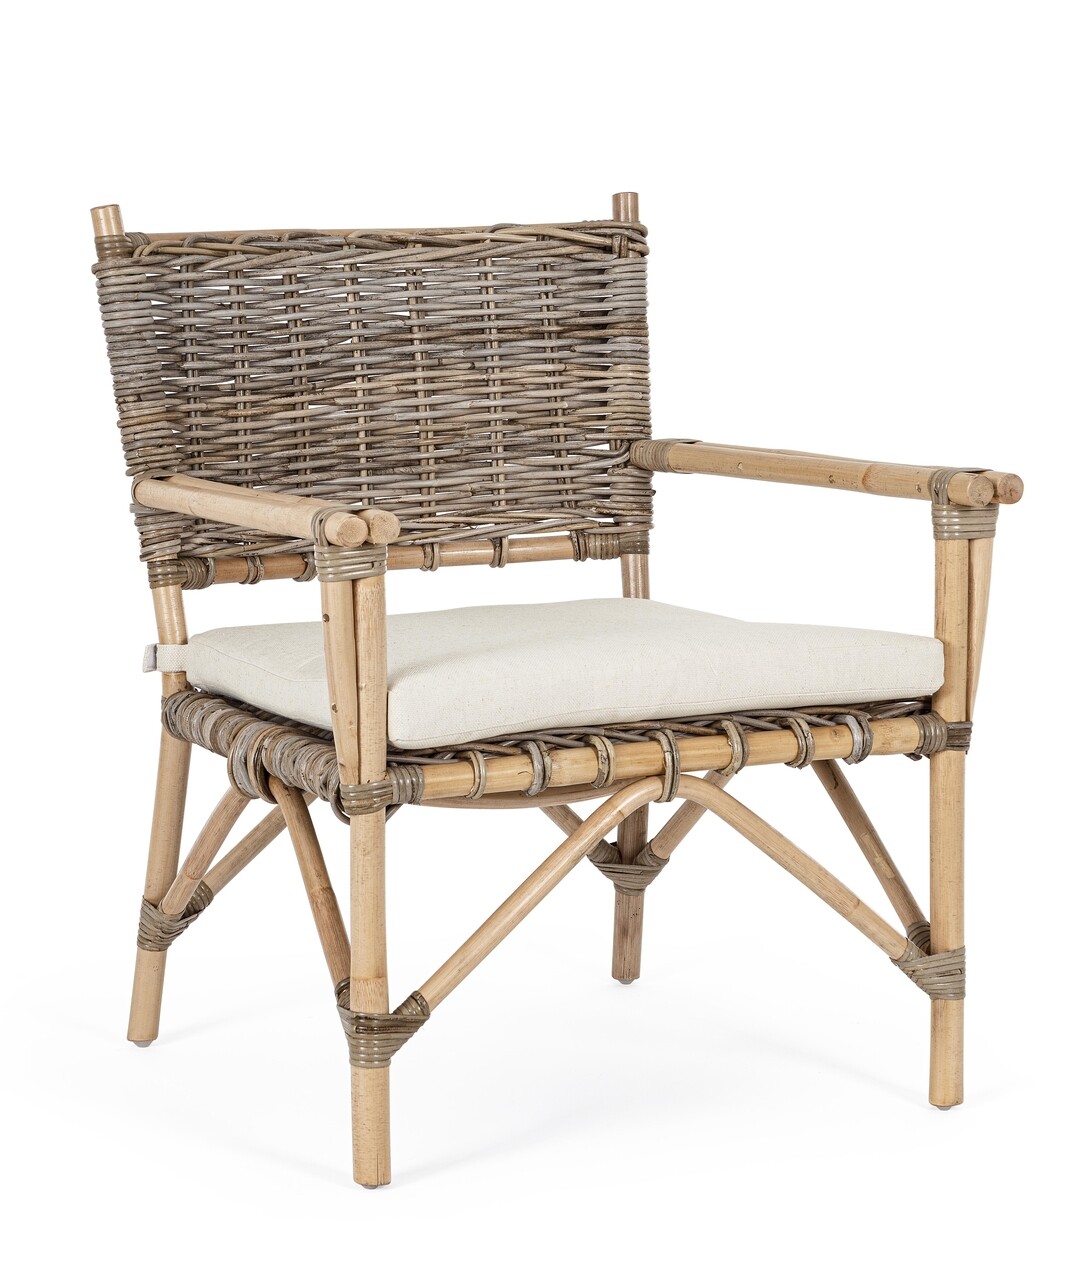 Tarifa Kerti/terasz fotel, Bizzotto, 68.5 x 70 x 80 cm, rotáng/polipamut/len, természetes